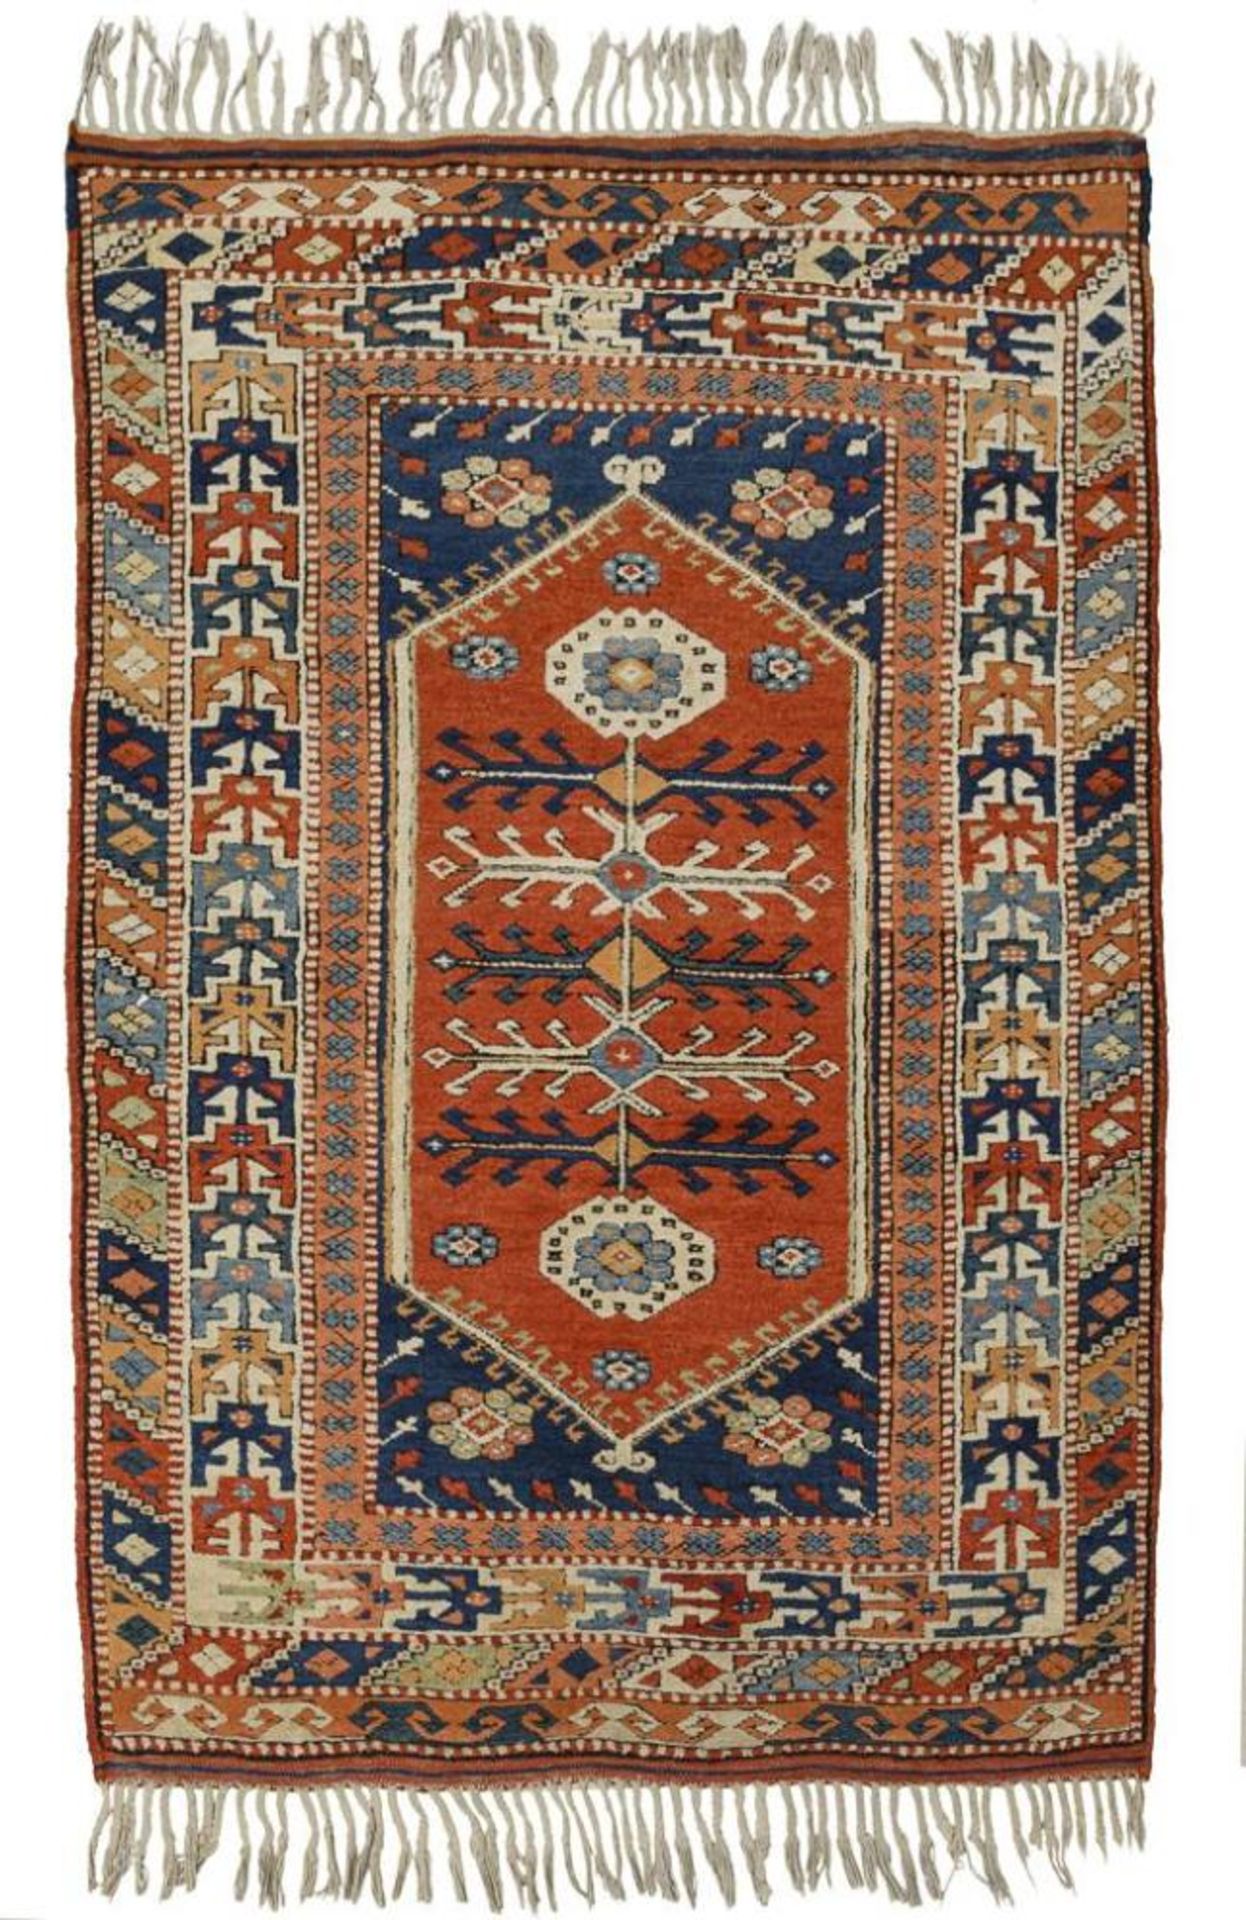 Qualitätvoller Teppich mit kaukasischem Dekor.